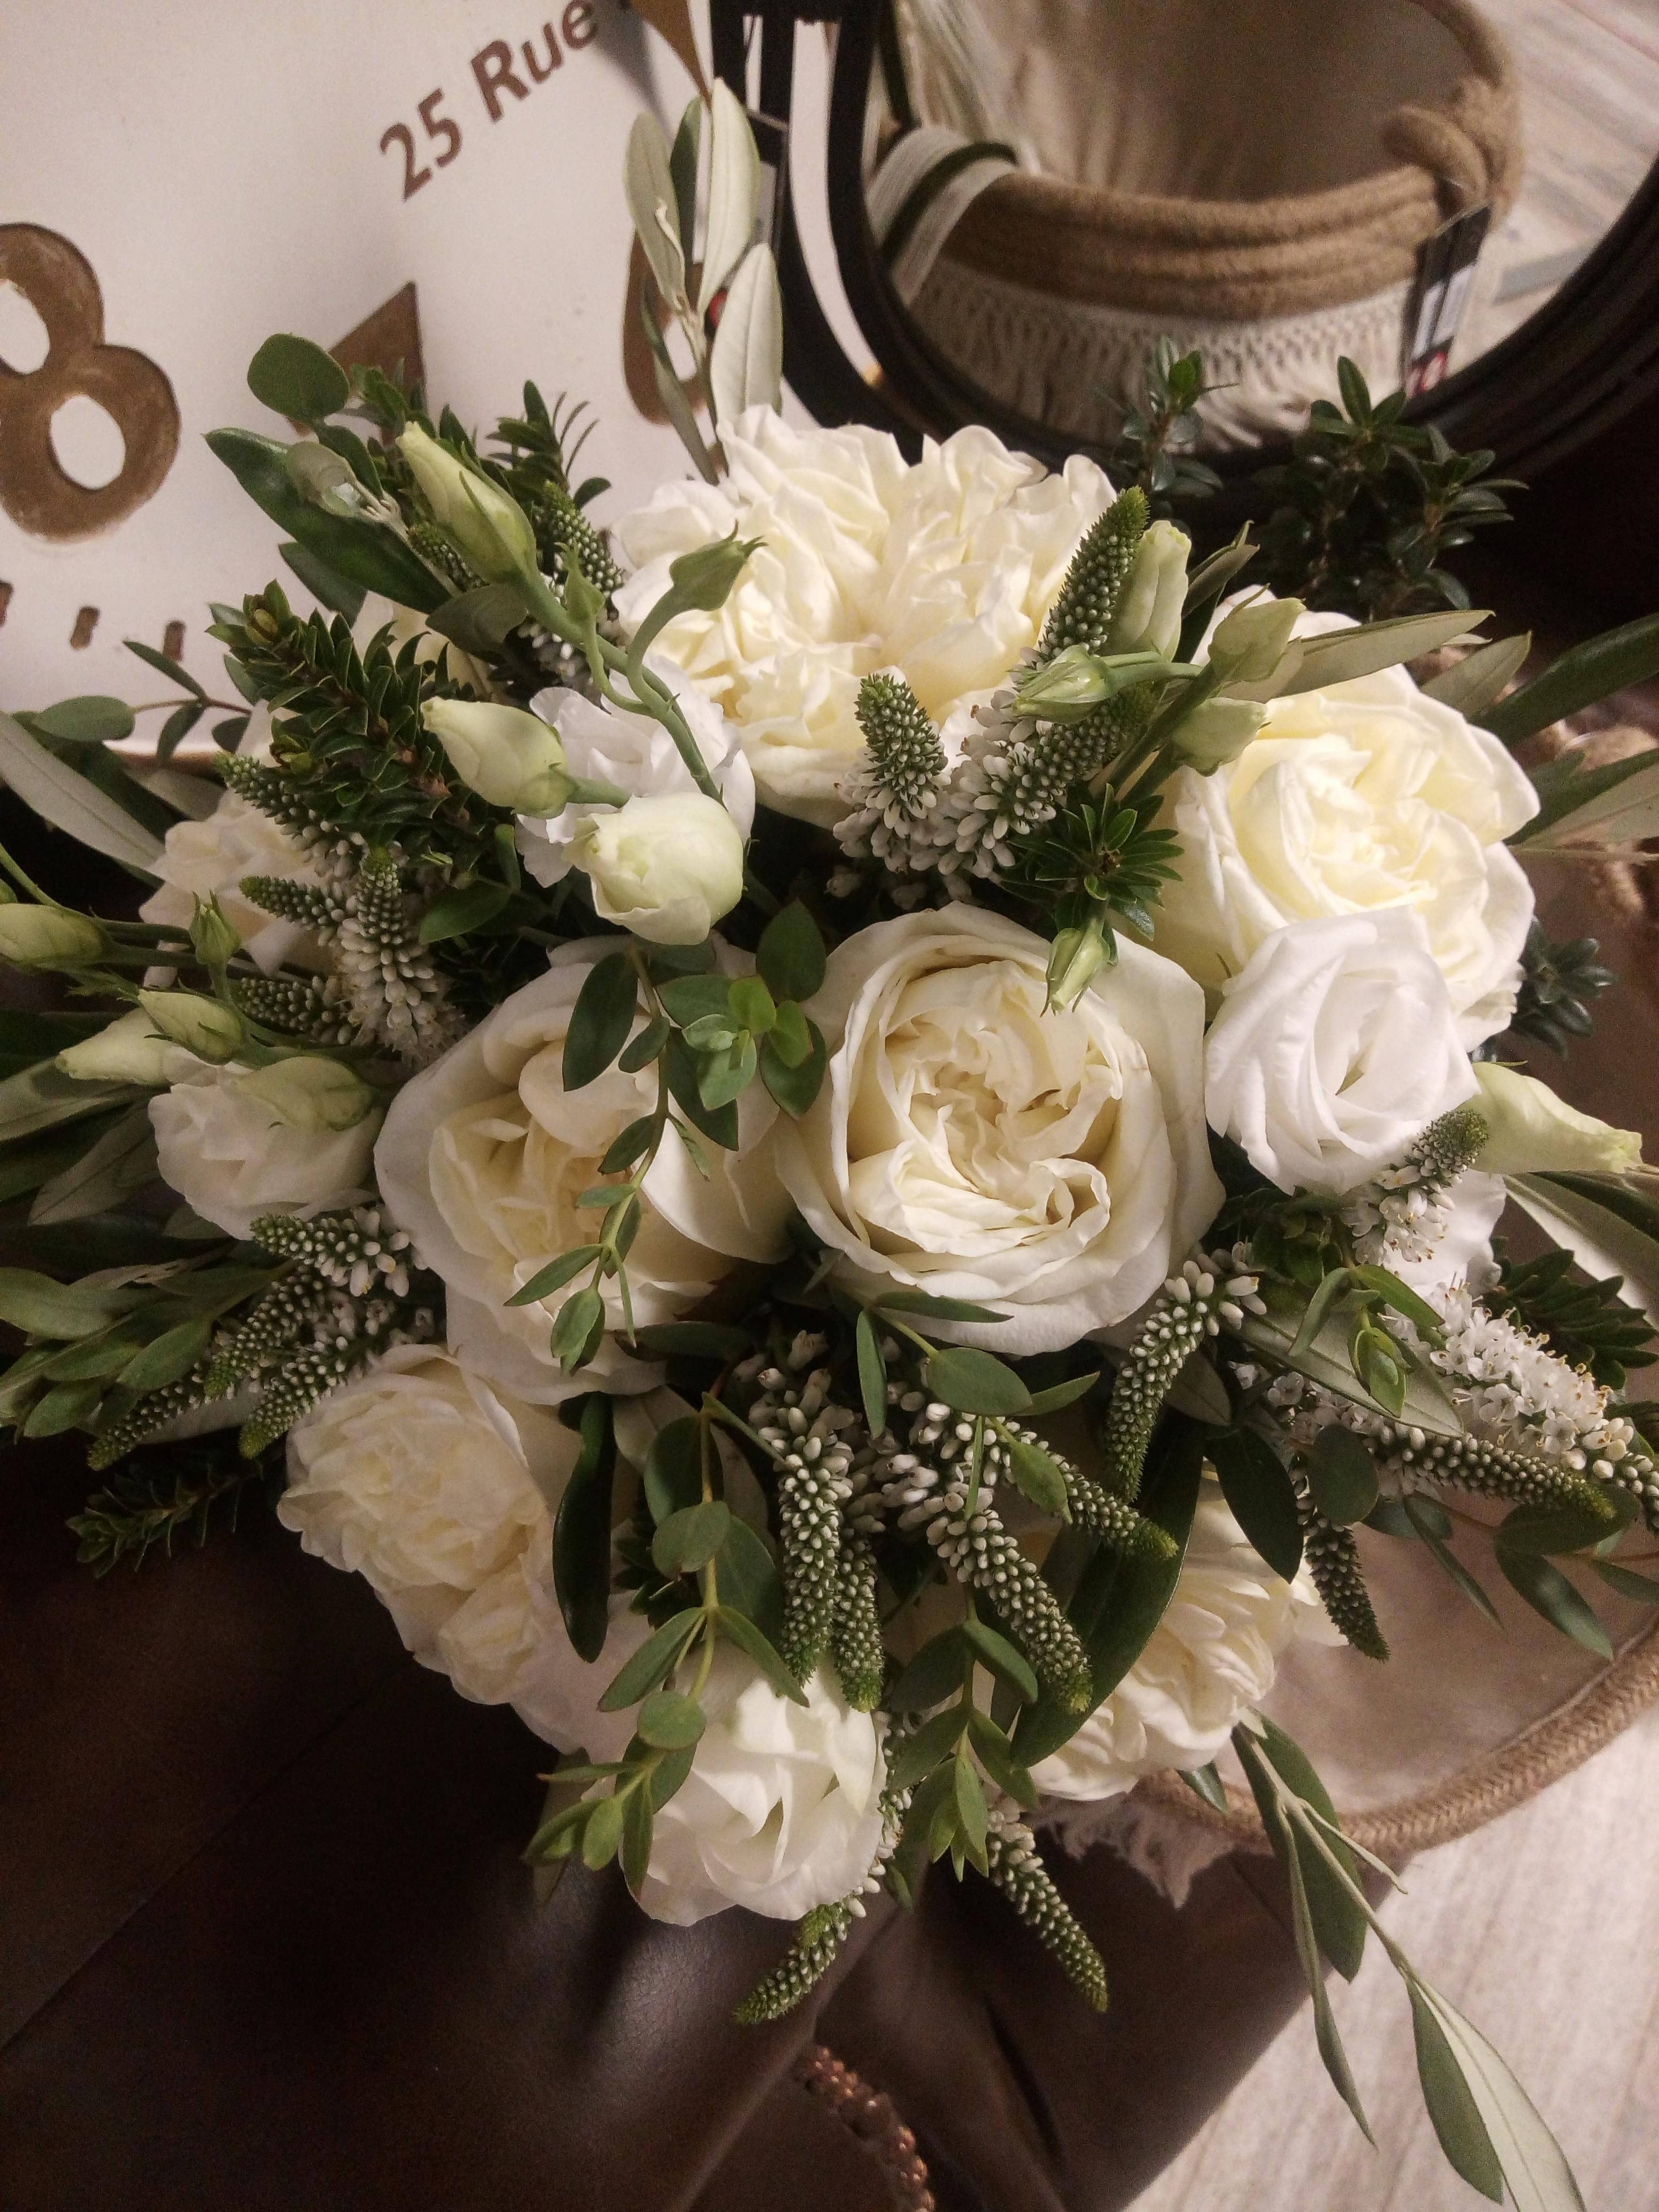 bouquet de roses blanches avec des touches de vert